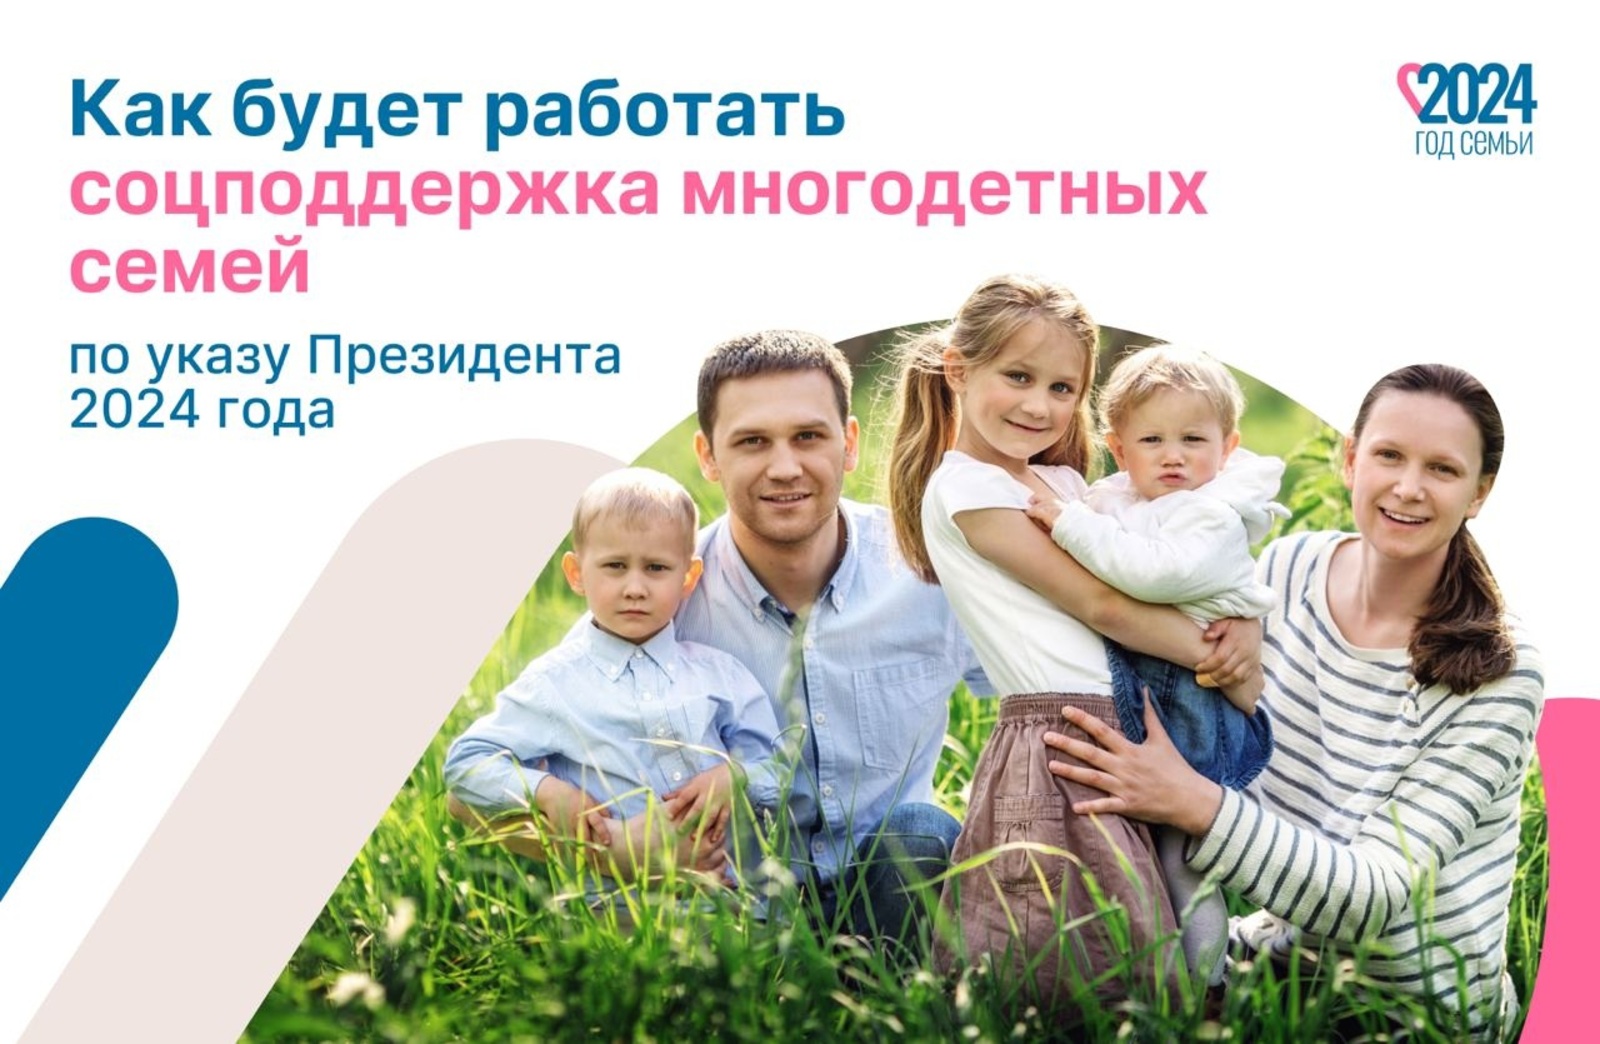 Президент России Владимир Путин подписал указ о мерах социальной поддержки многодетных семей